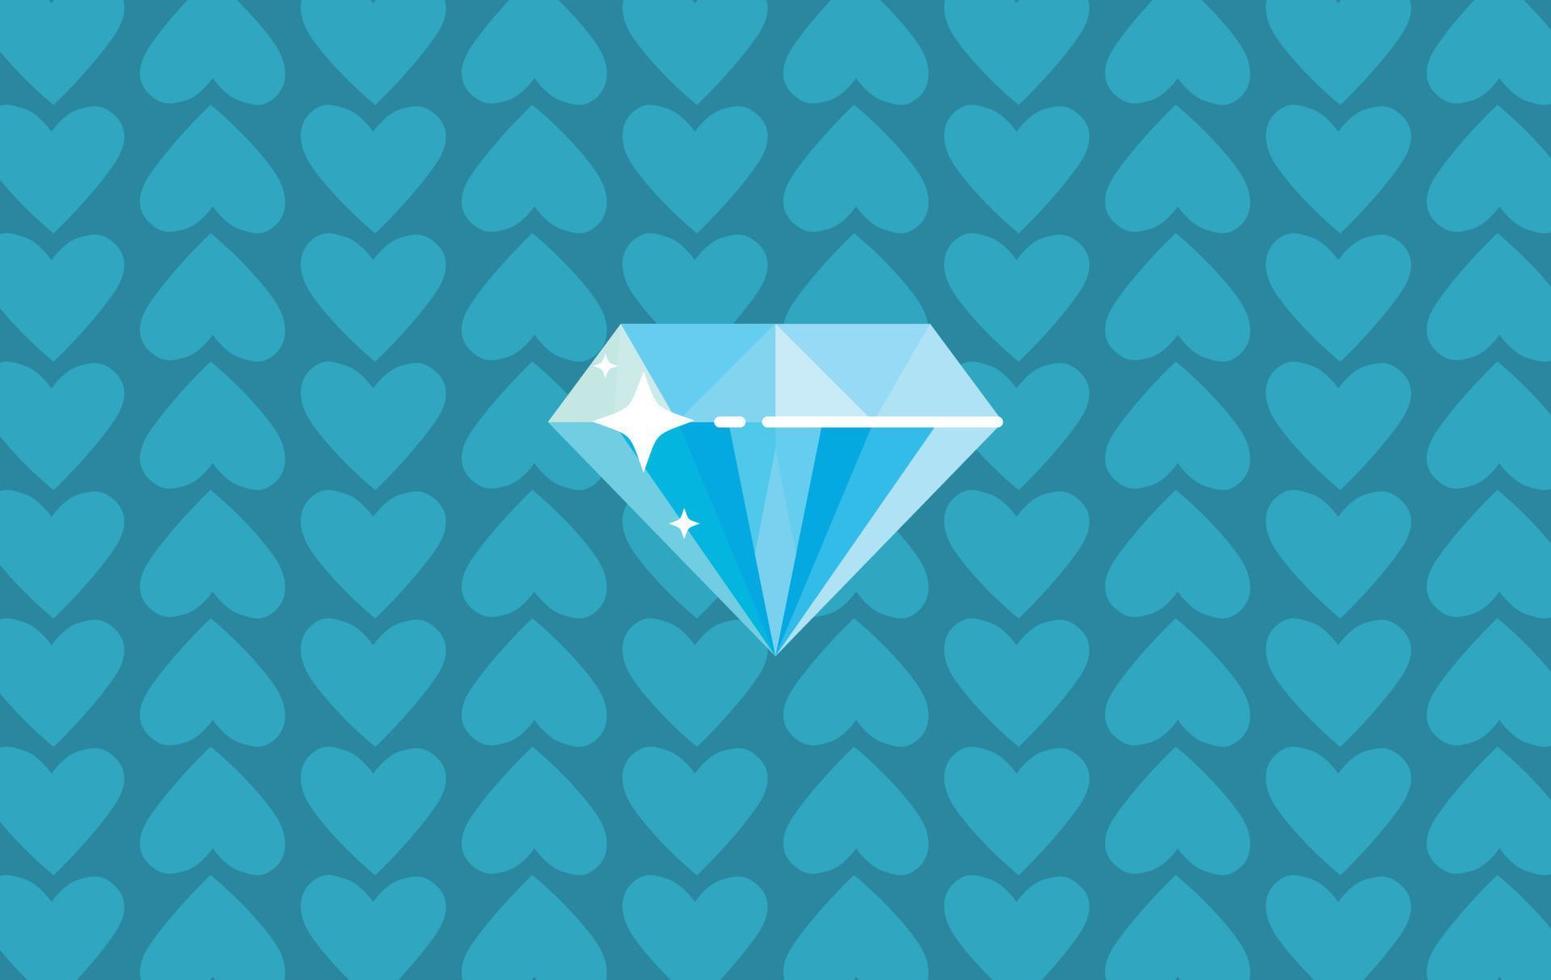 diamant de syle plat et illustration de vecteur plat de richesse en cristal.